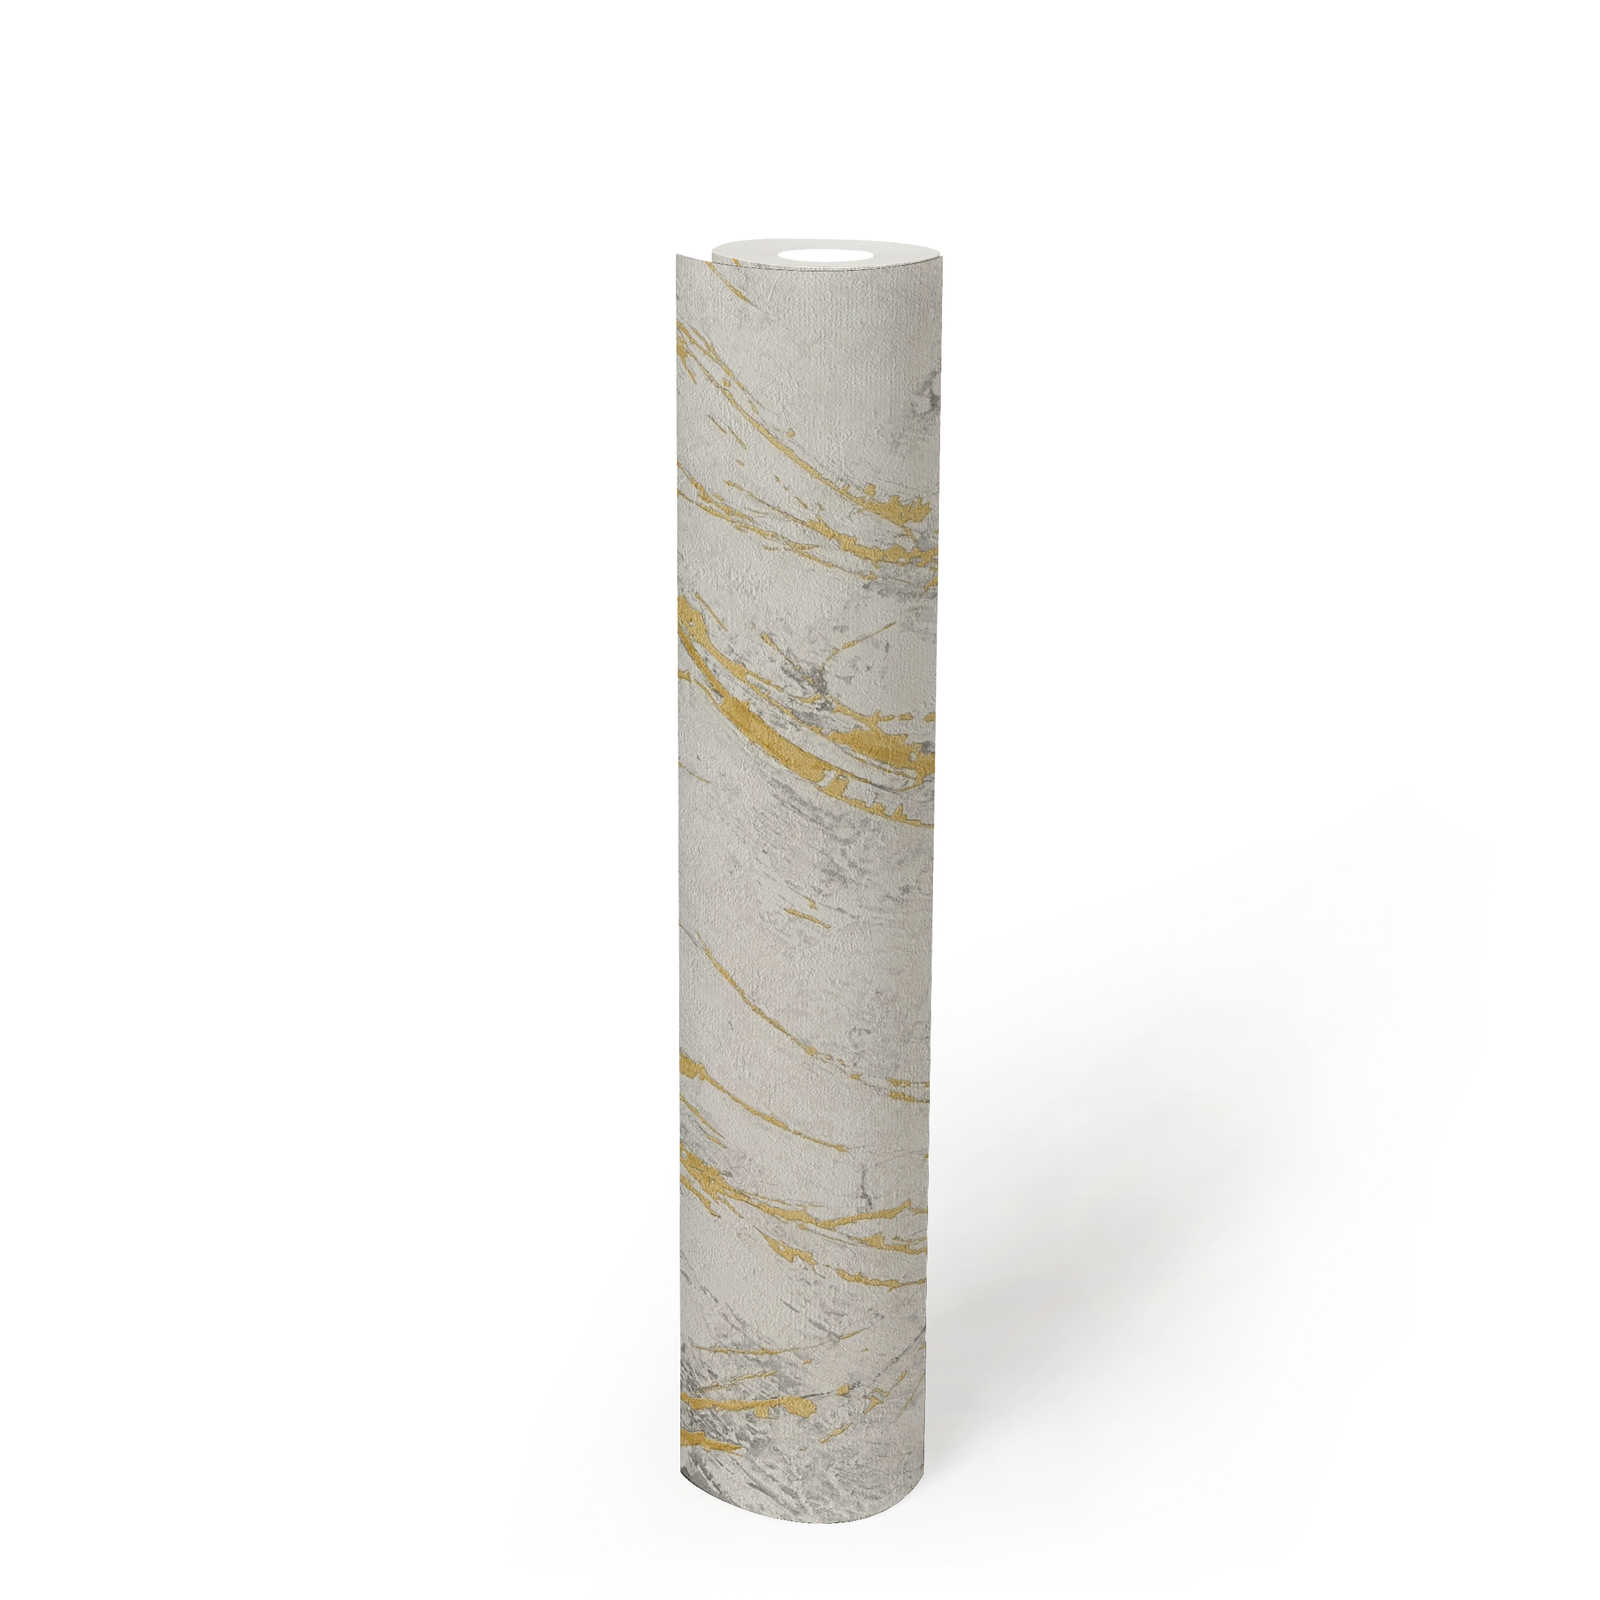             Carta da parati in marmo dorato con struttura metallica - bianco, metallizzato
        